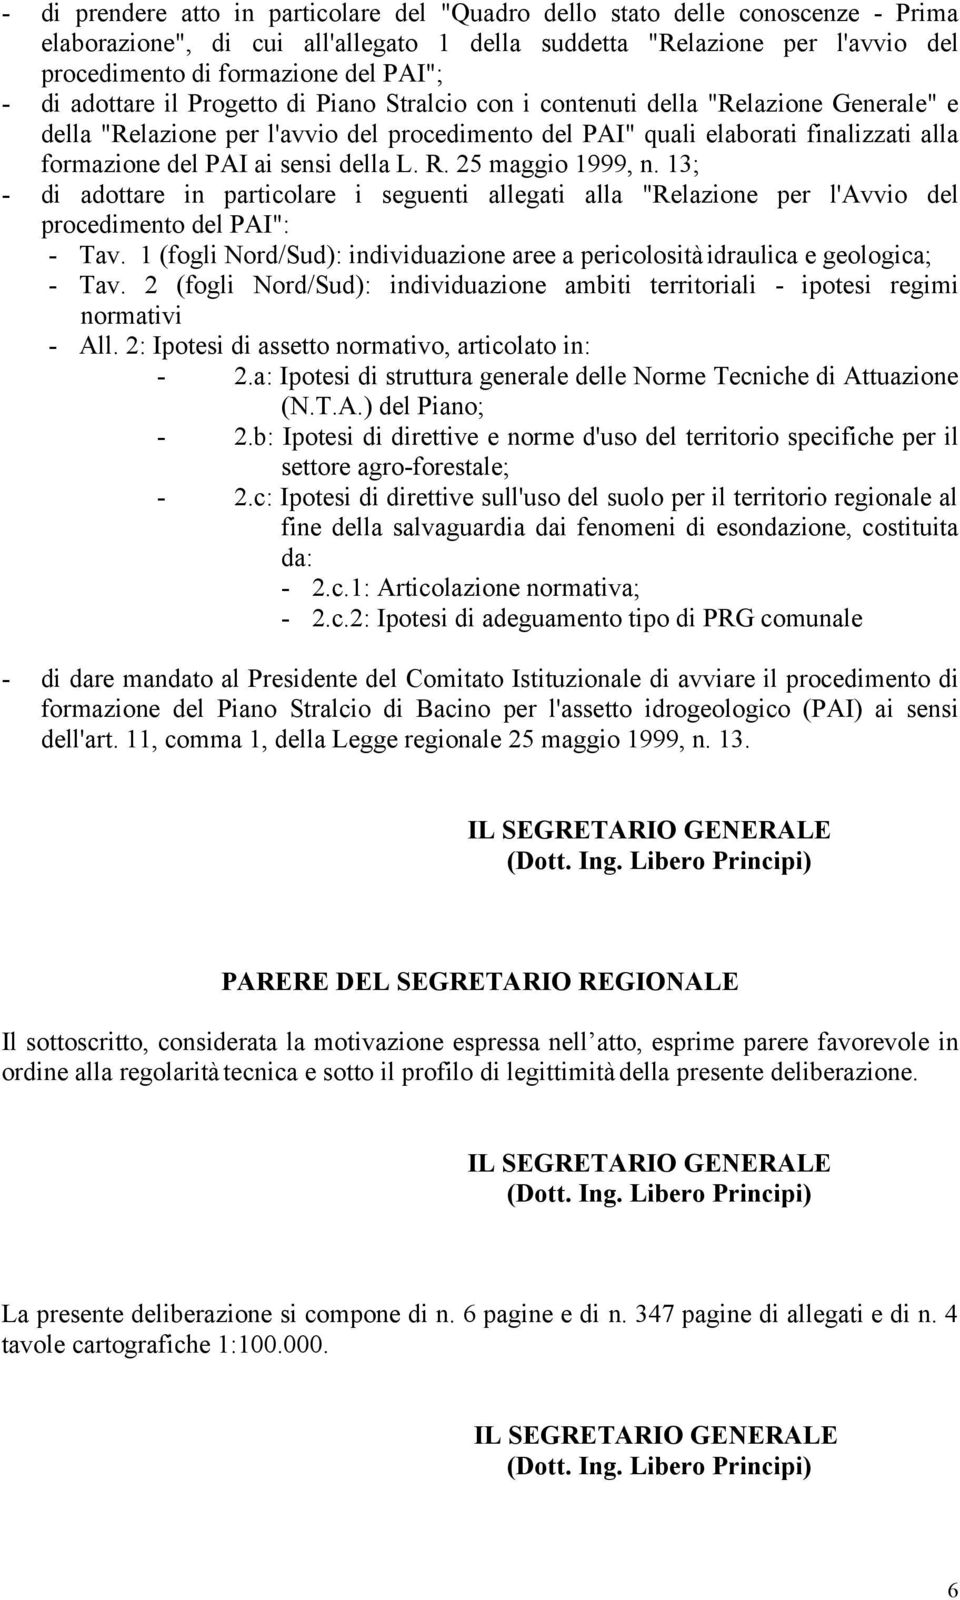 sensi della L. R. 25 maggio 1999, n. 13; - di adottare in particolare i seguenti allegati alla "Relazione per l'avvio del procedimento del PAI": - Tav.